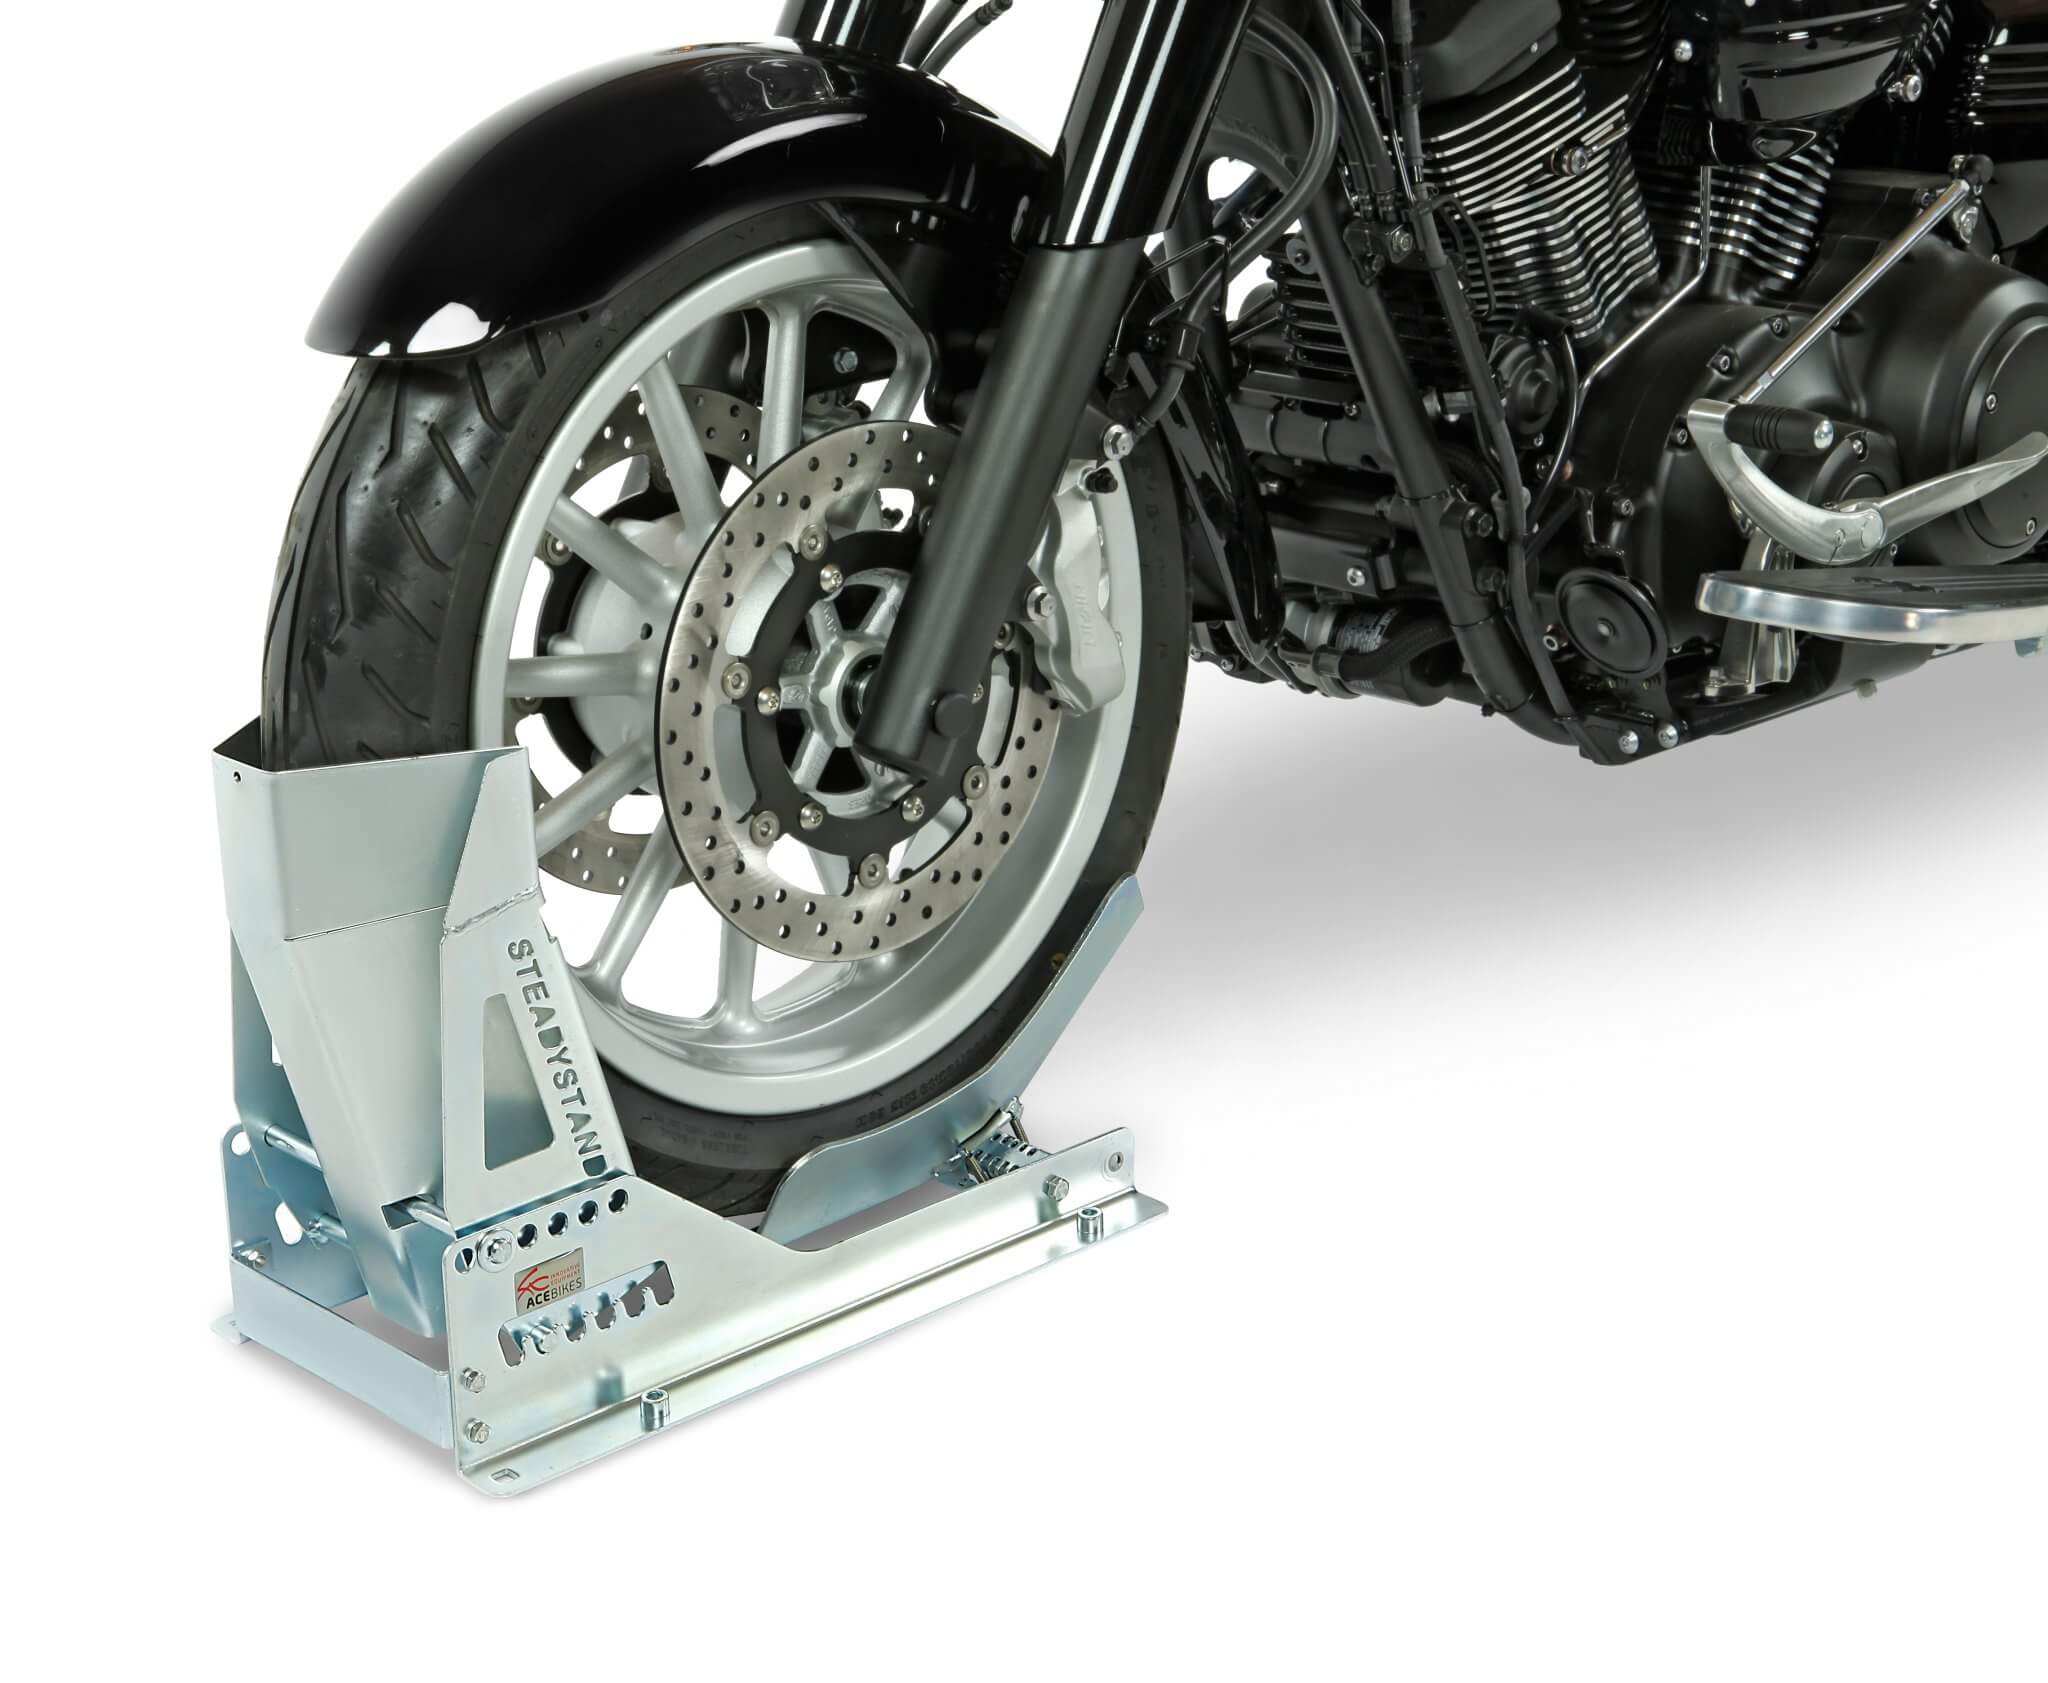 Acebikes SteadyStand Multi Standschiene Motorradstandschiene 15" bis 21"